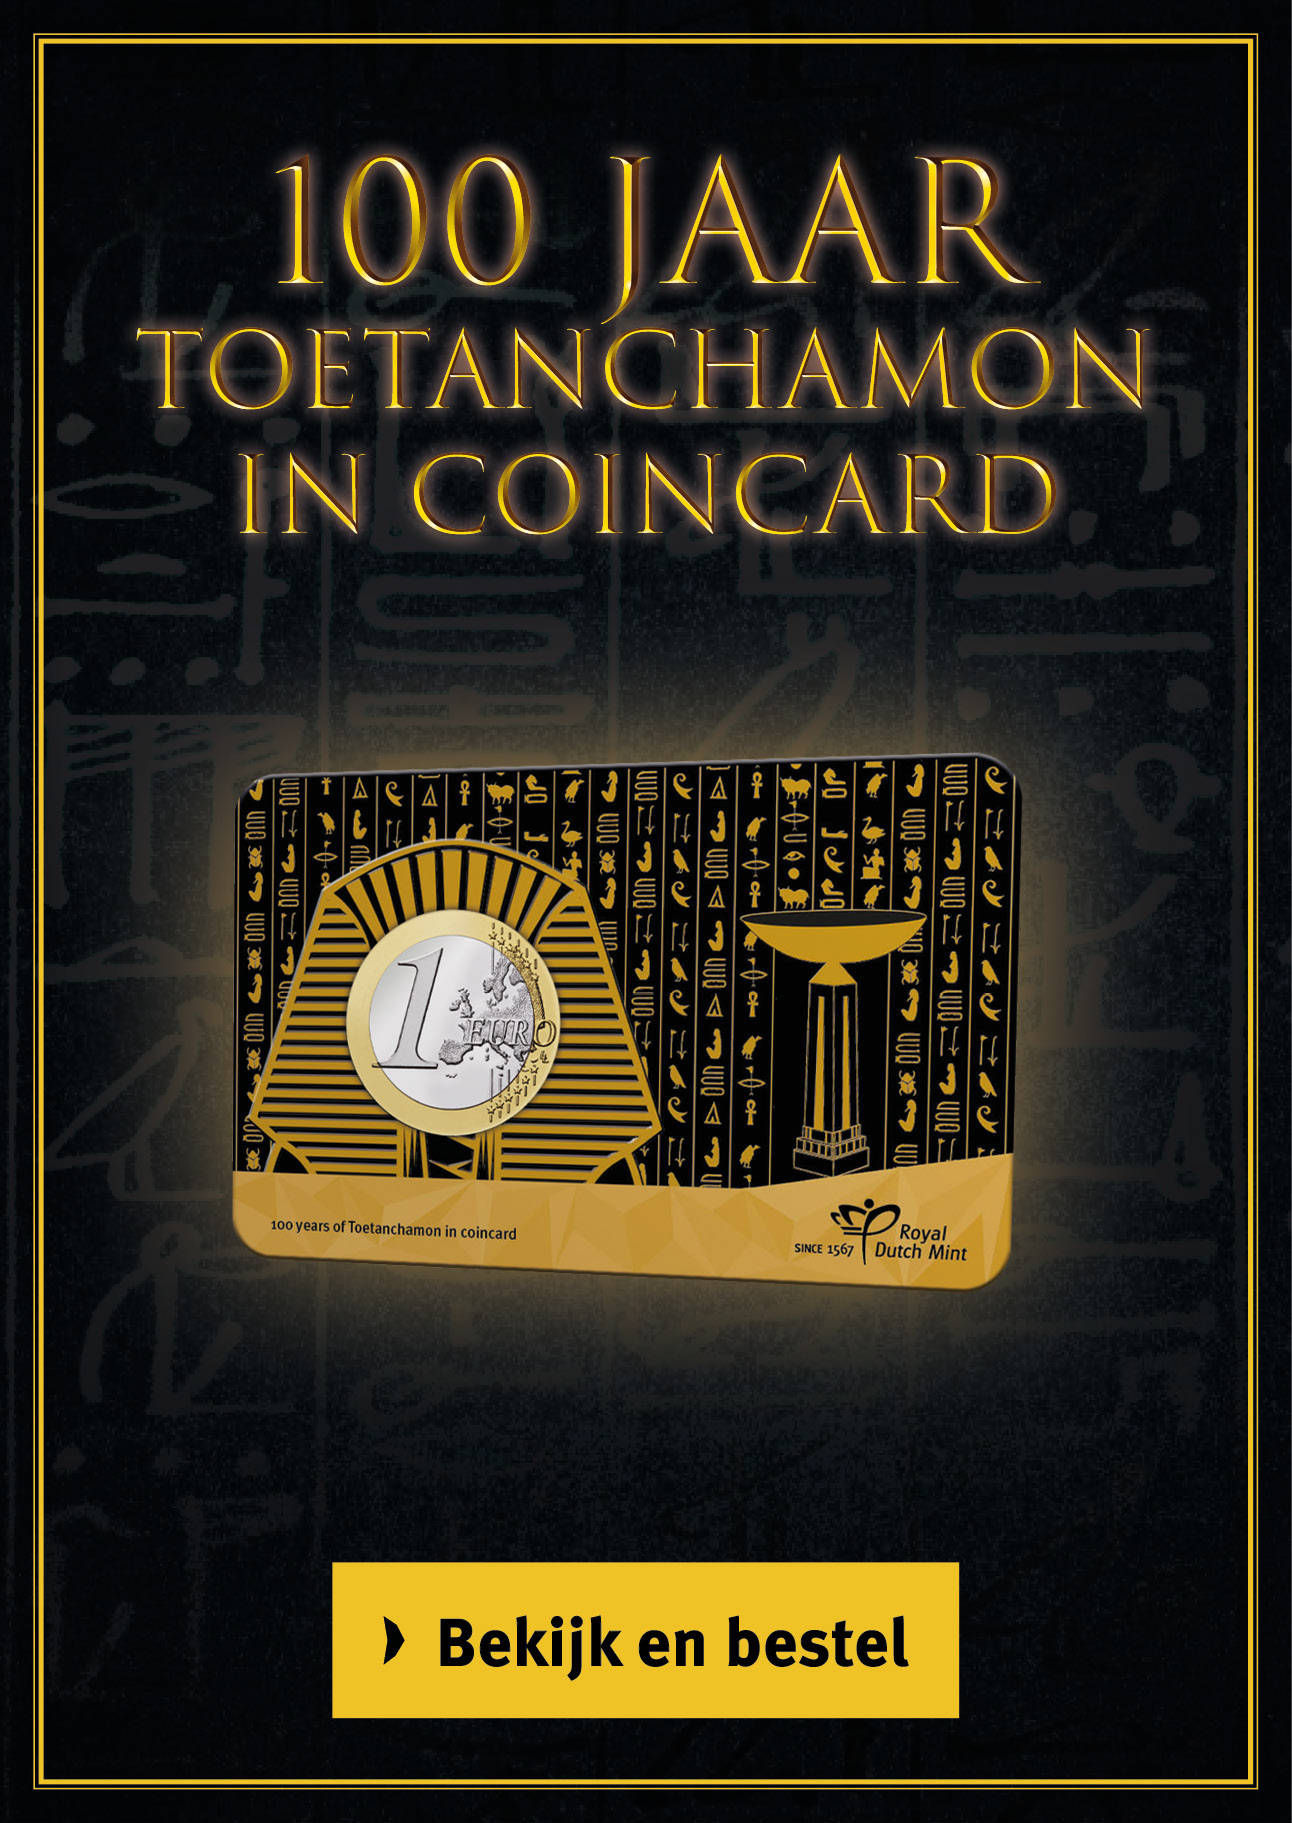 Bekijk en bestel: 100 jaar Toetankhamon in coincard